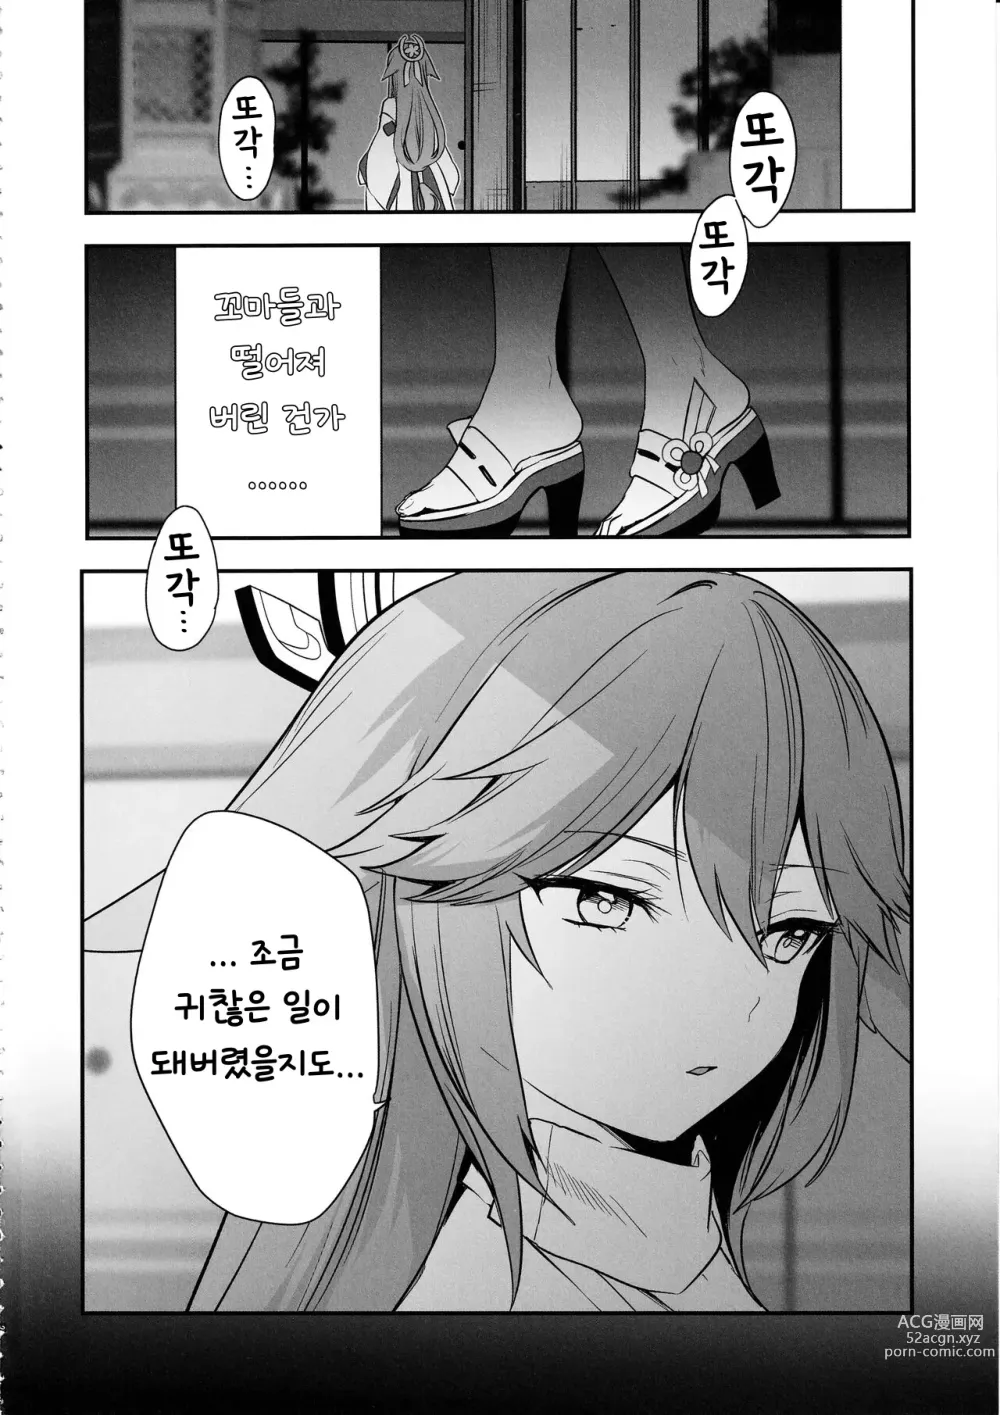 Page 3 of doujinshi 궁사님의 수난